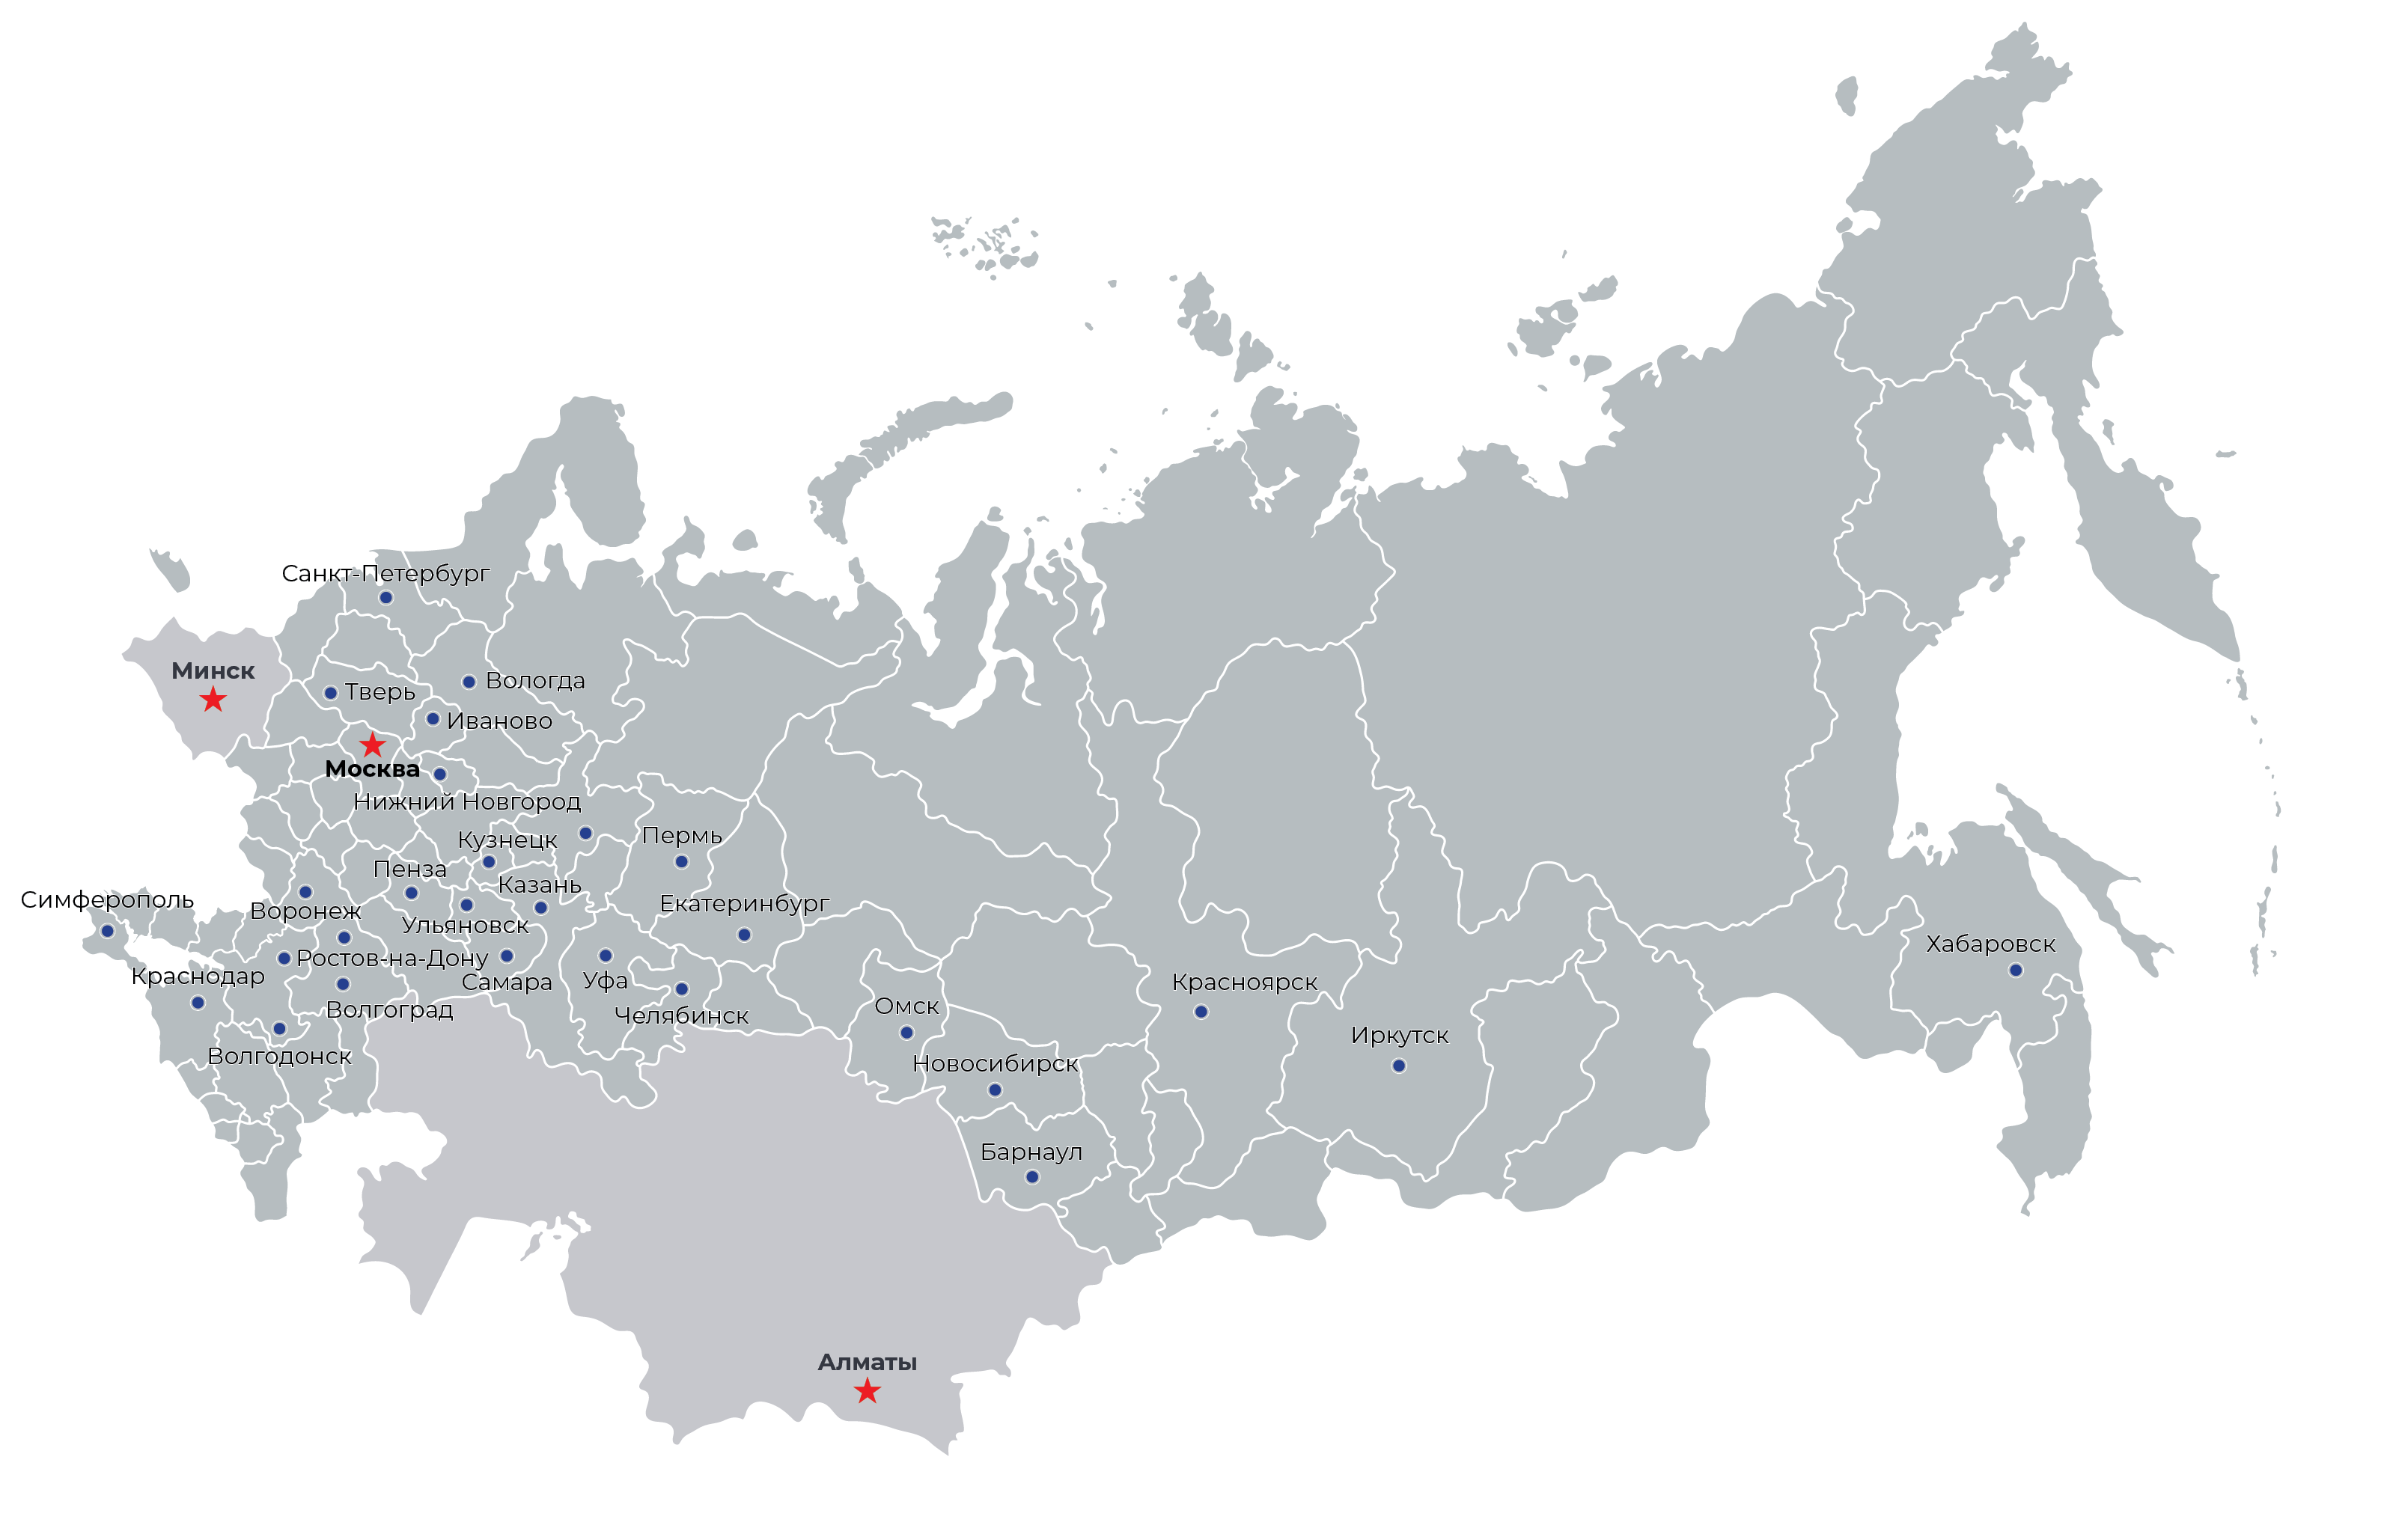 30 сервисных центров по всей России